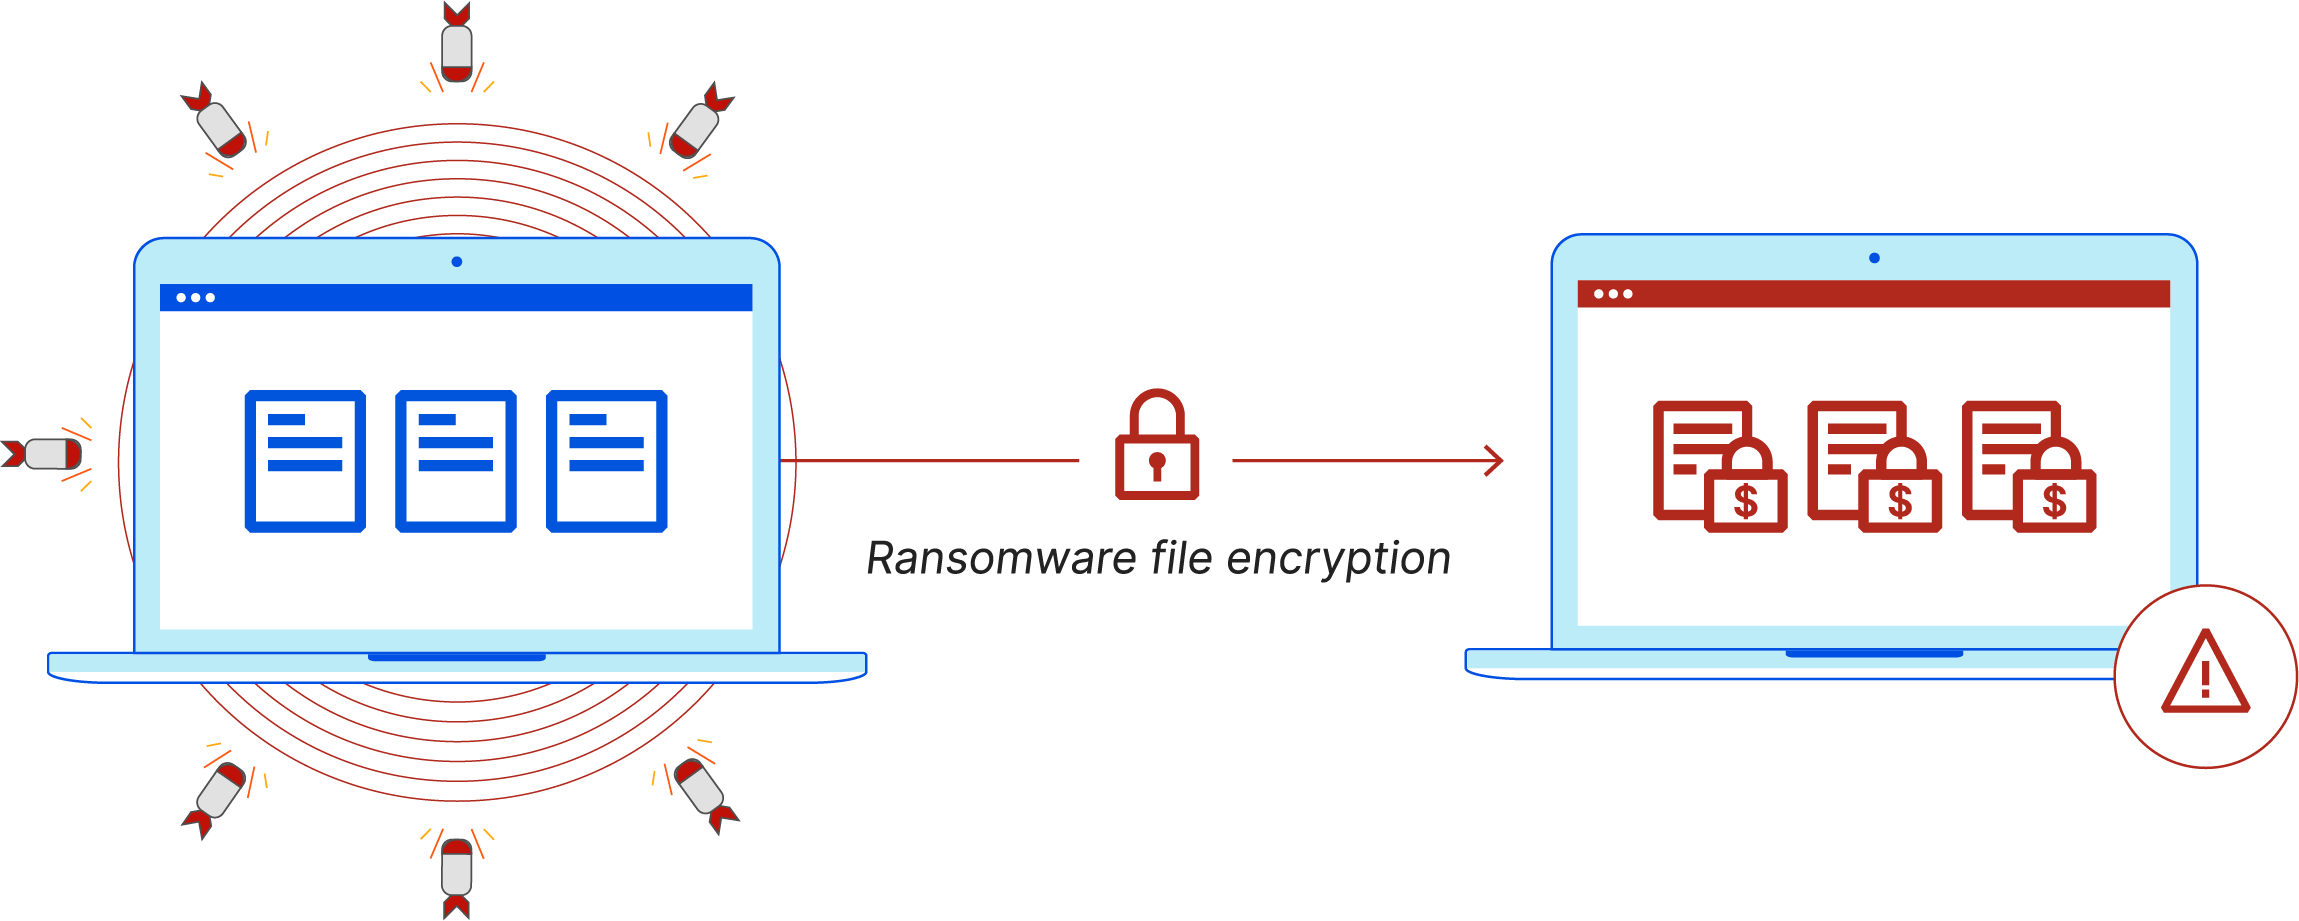 ¿Qué es el ransomware? - El ransomware infecta un ordenador y encripta los archivos